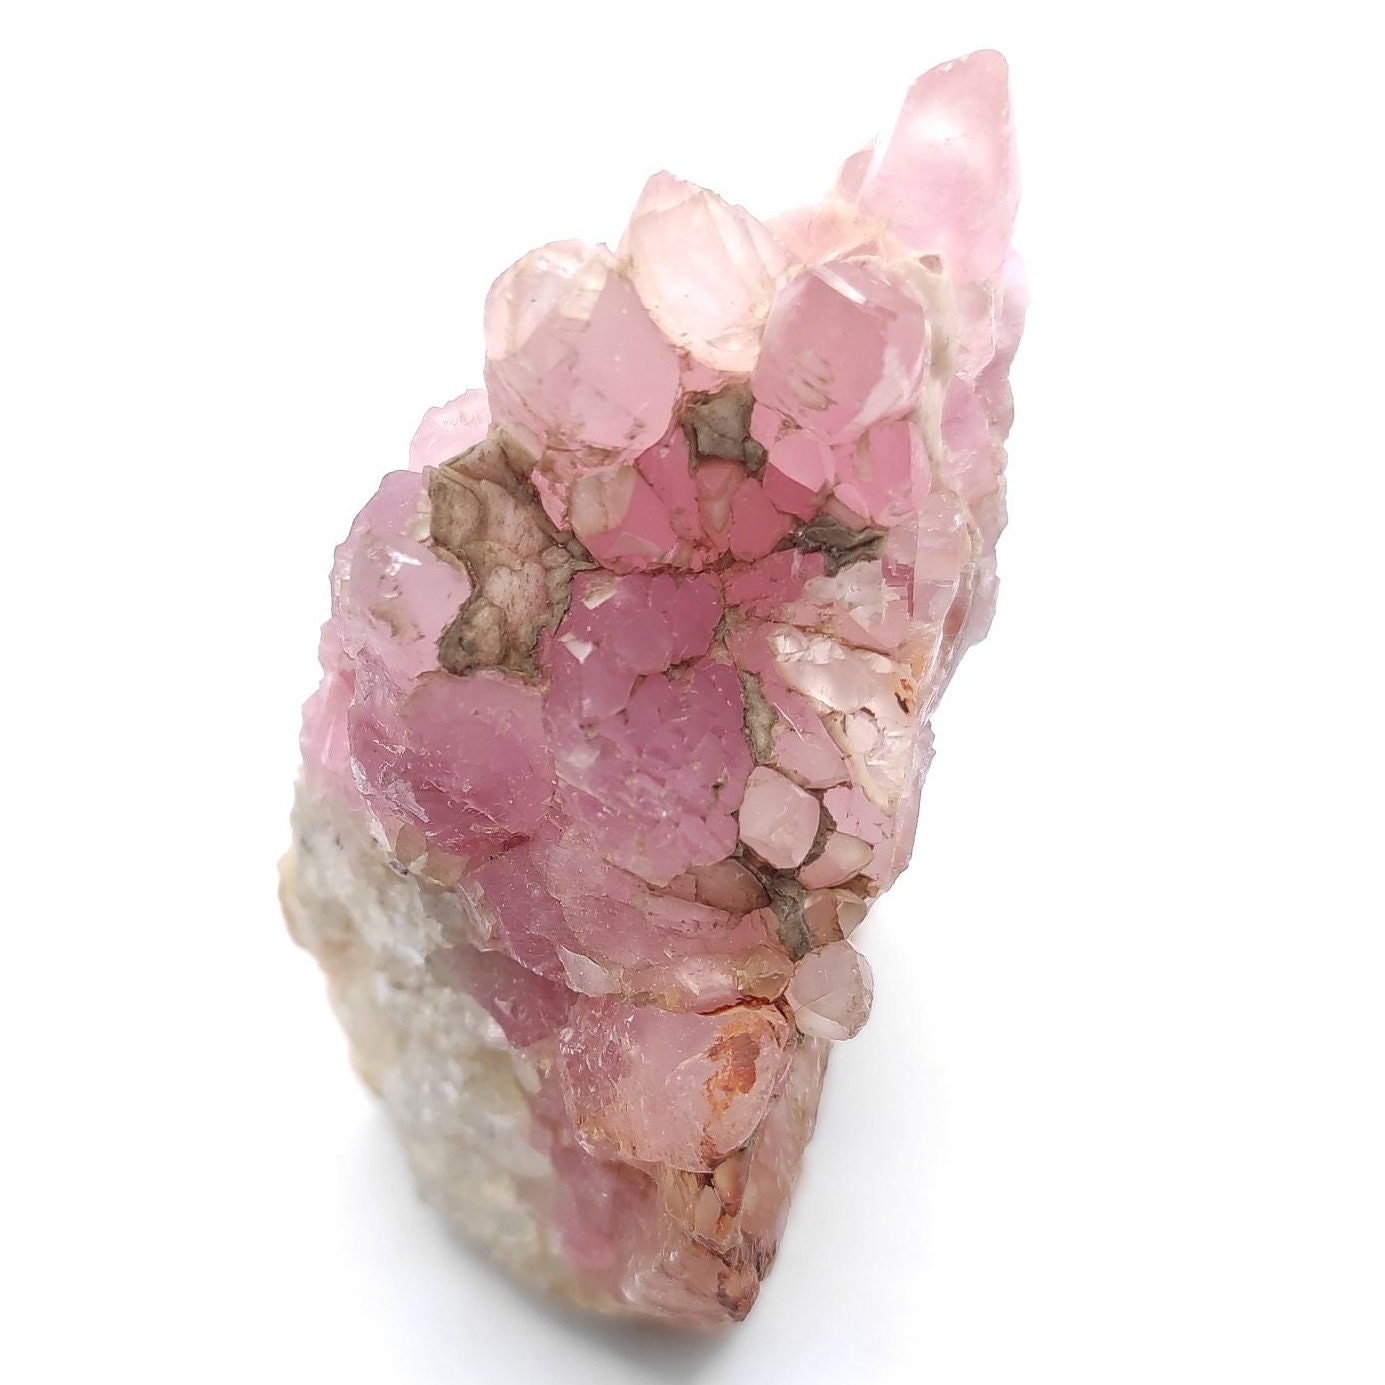 56g Cobalto Calcite - Pink Cobalt Calcite from Bou Azzer, Morocco - Salrose Stone - Cobaltocalcite Mineral Specimen - Pink Calcite Crystal